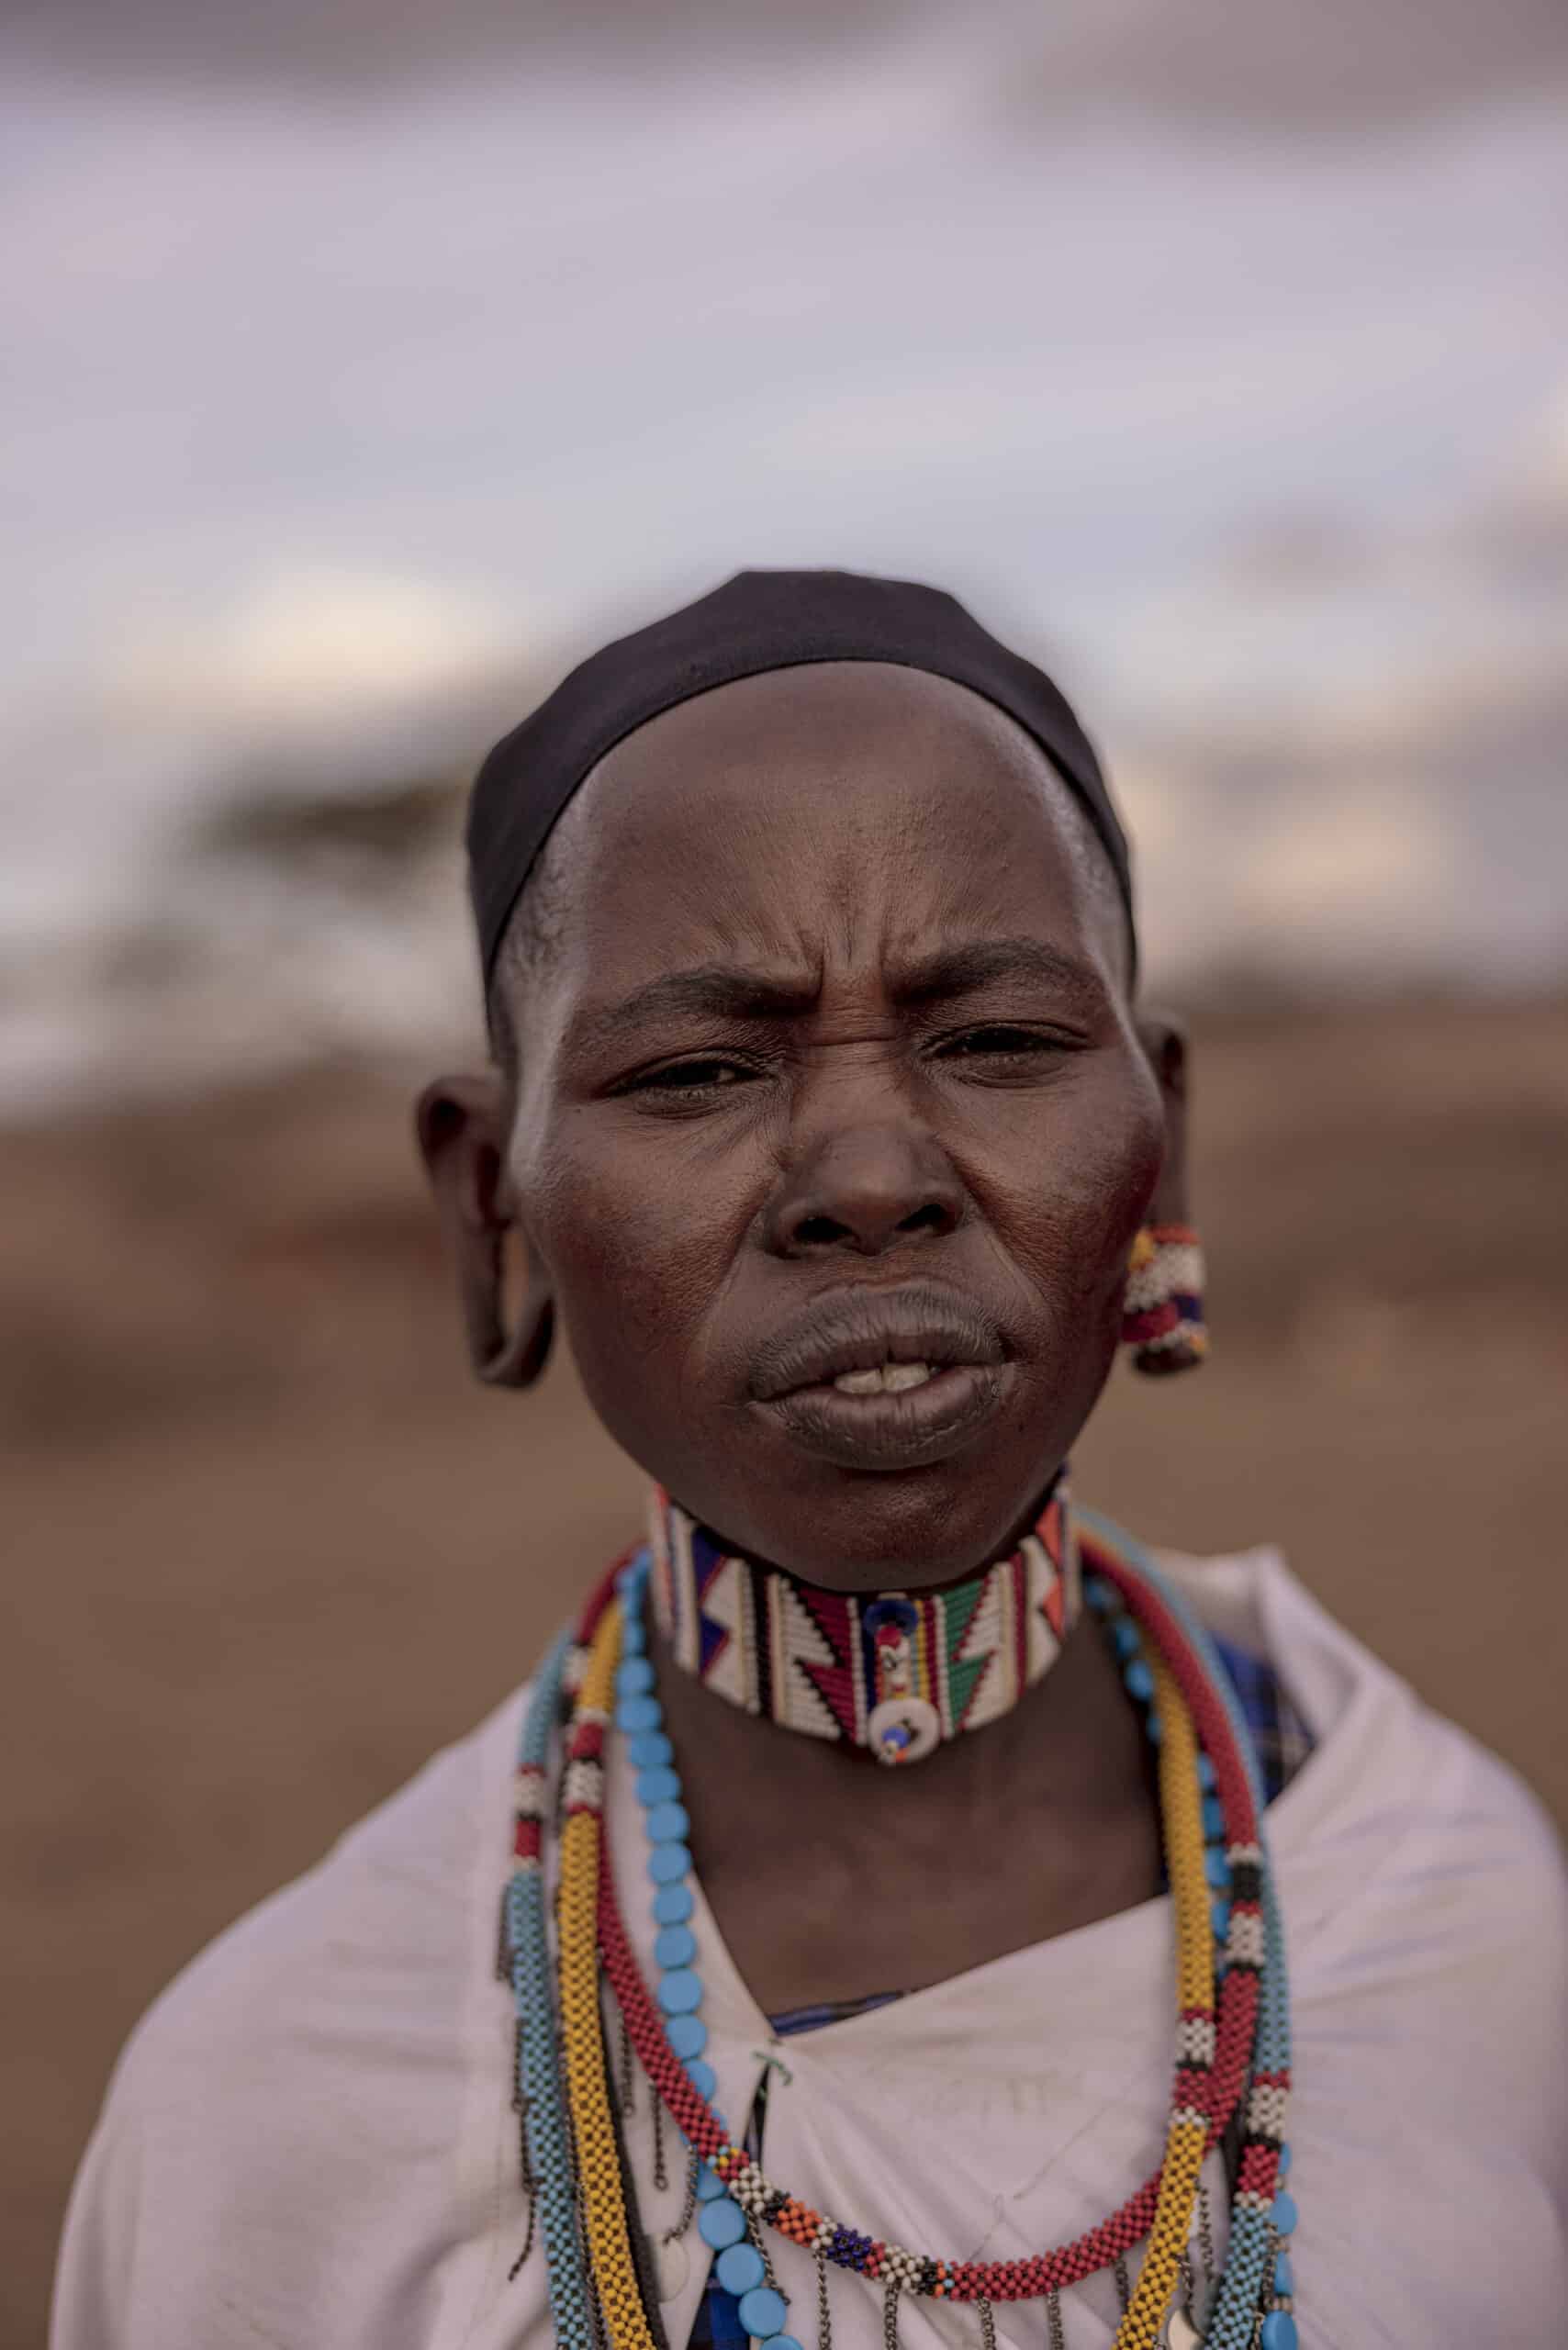 Porträt einer Person mit traditionellem Schmuck und Kleidung, einschließlich Halsketten und Stirnband, die vor einem unscharfen natürlichen Hintergrund steht. © Fotografie Tomas Rodriguez